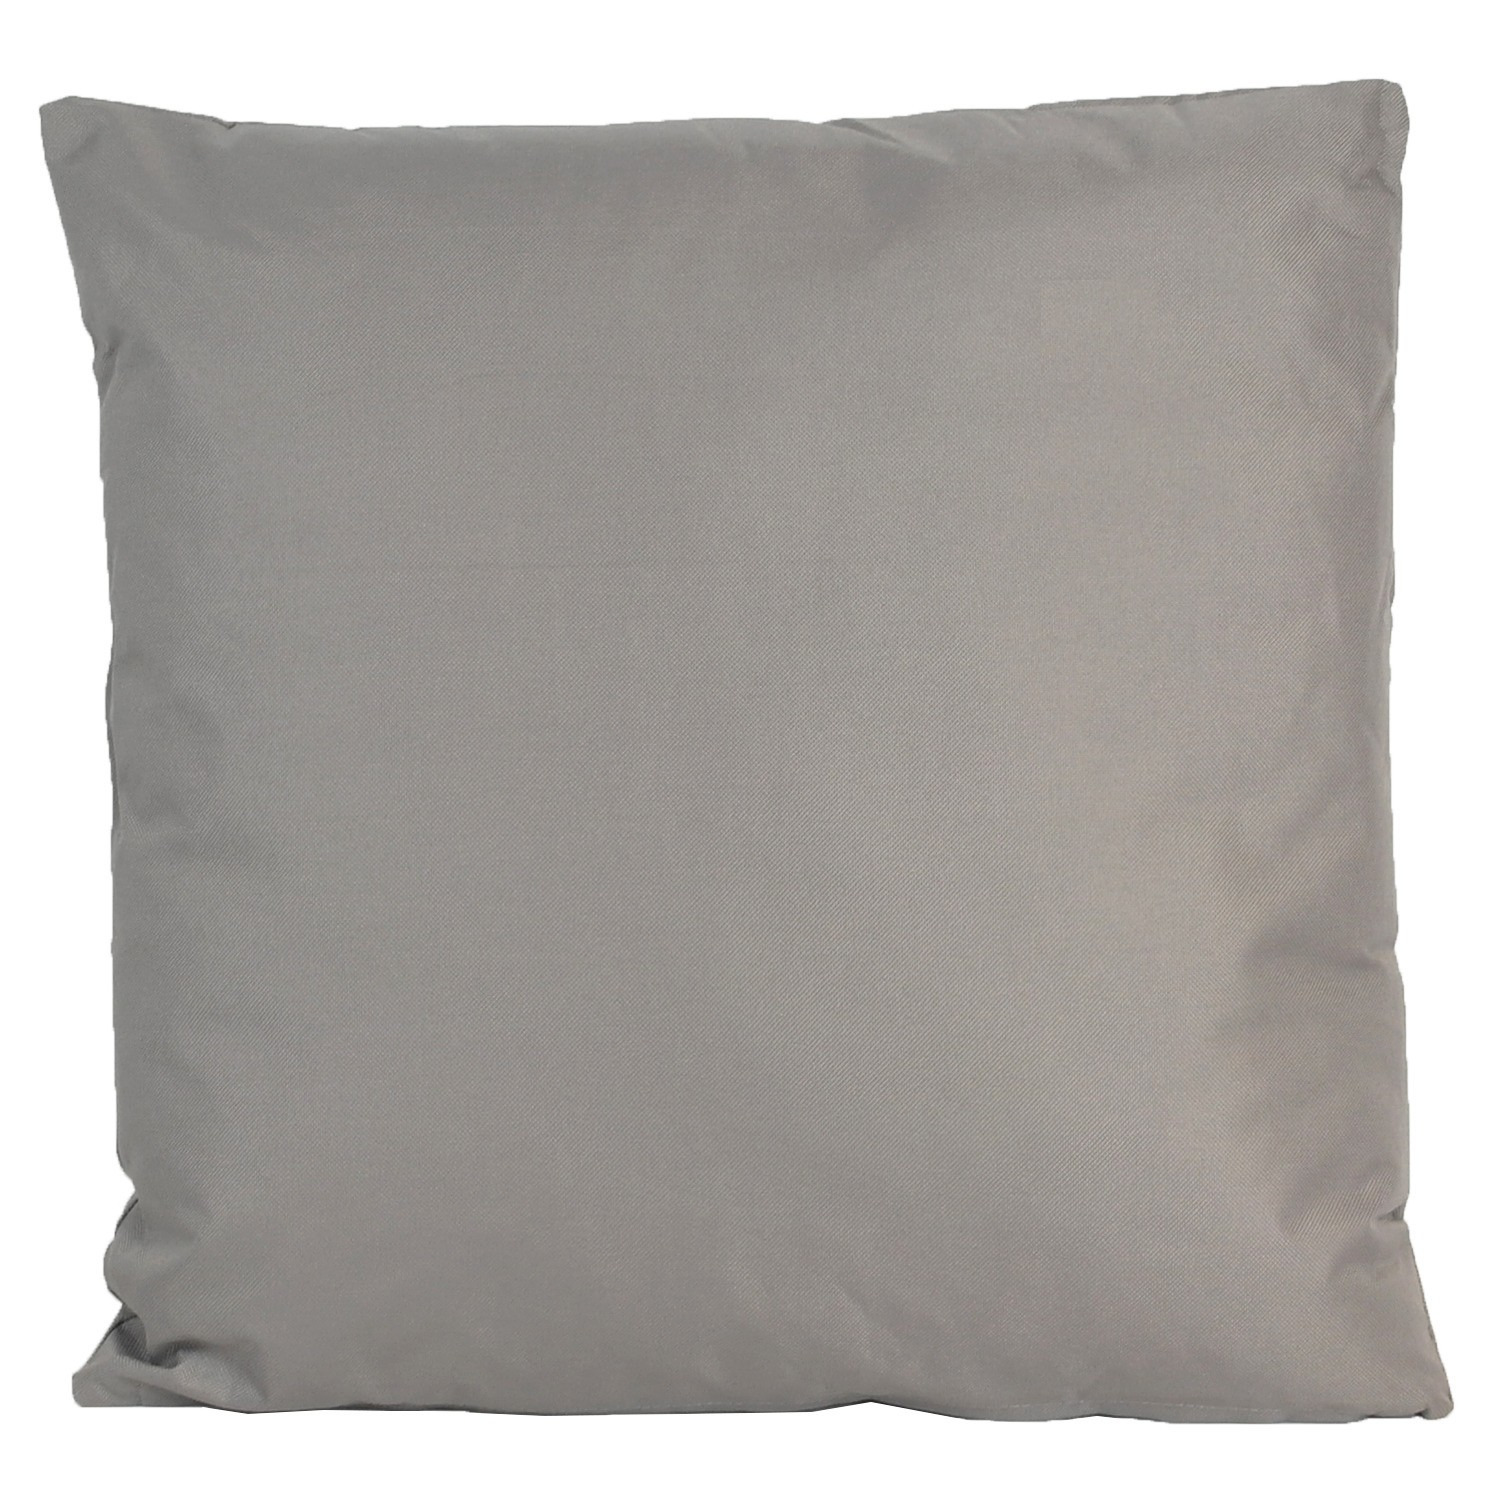 1x Bank-Sier kussens voor binnen en buiten in de kleur grijs 45 x 45 cm